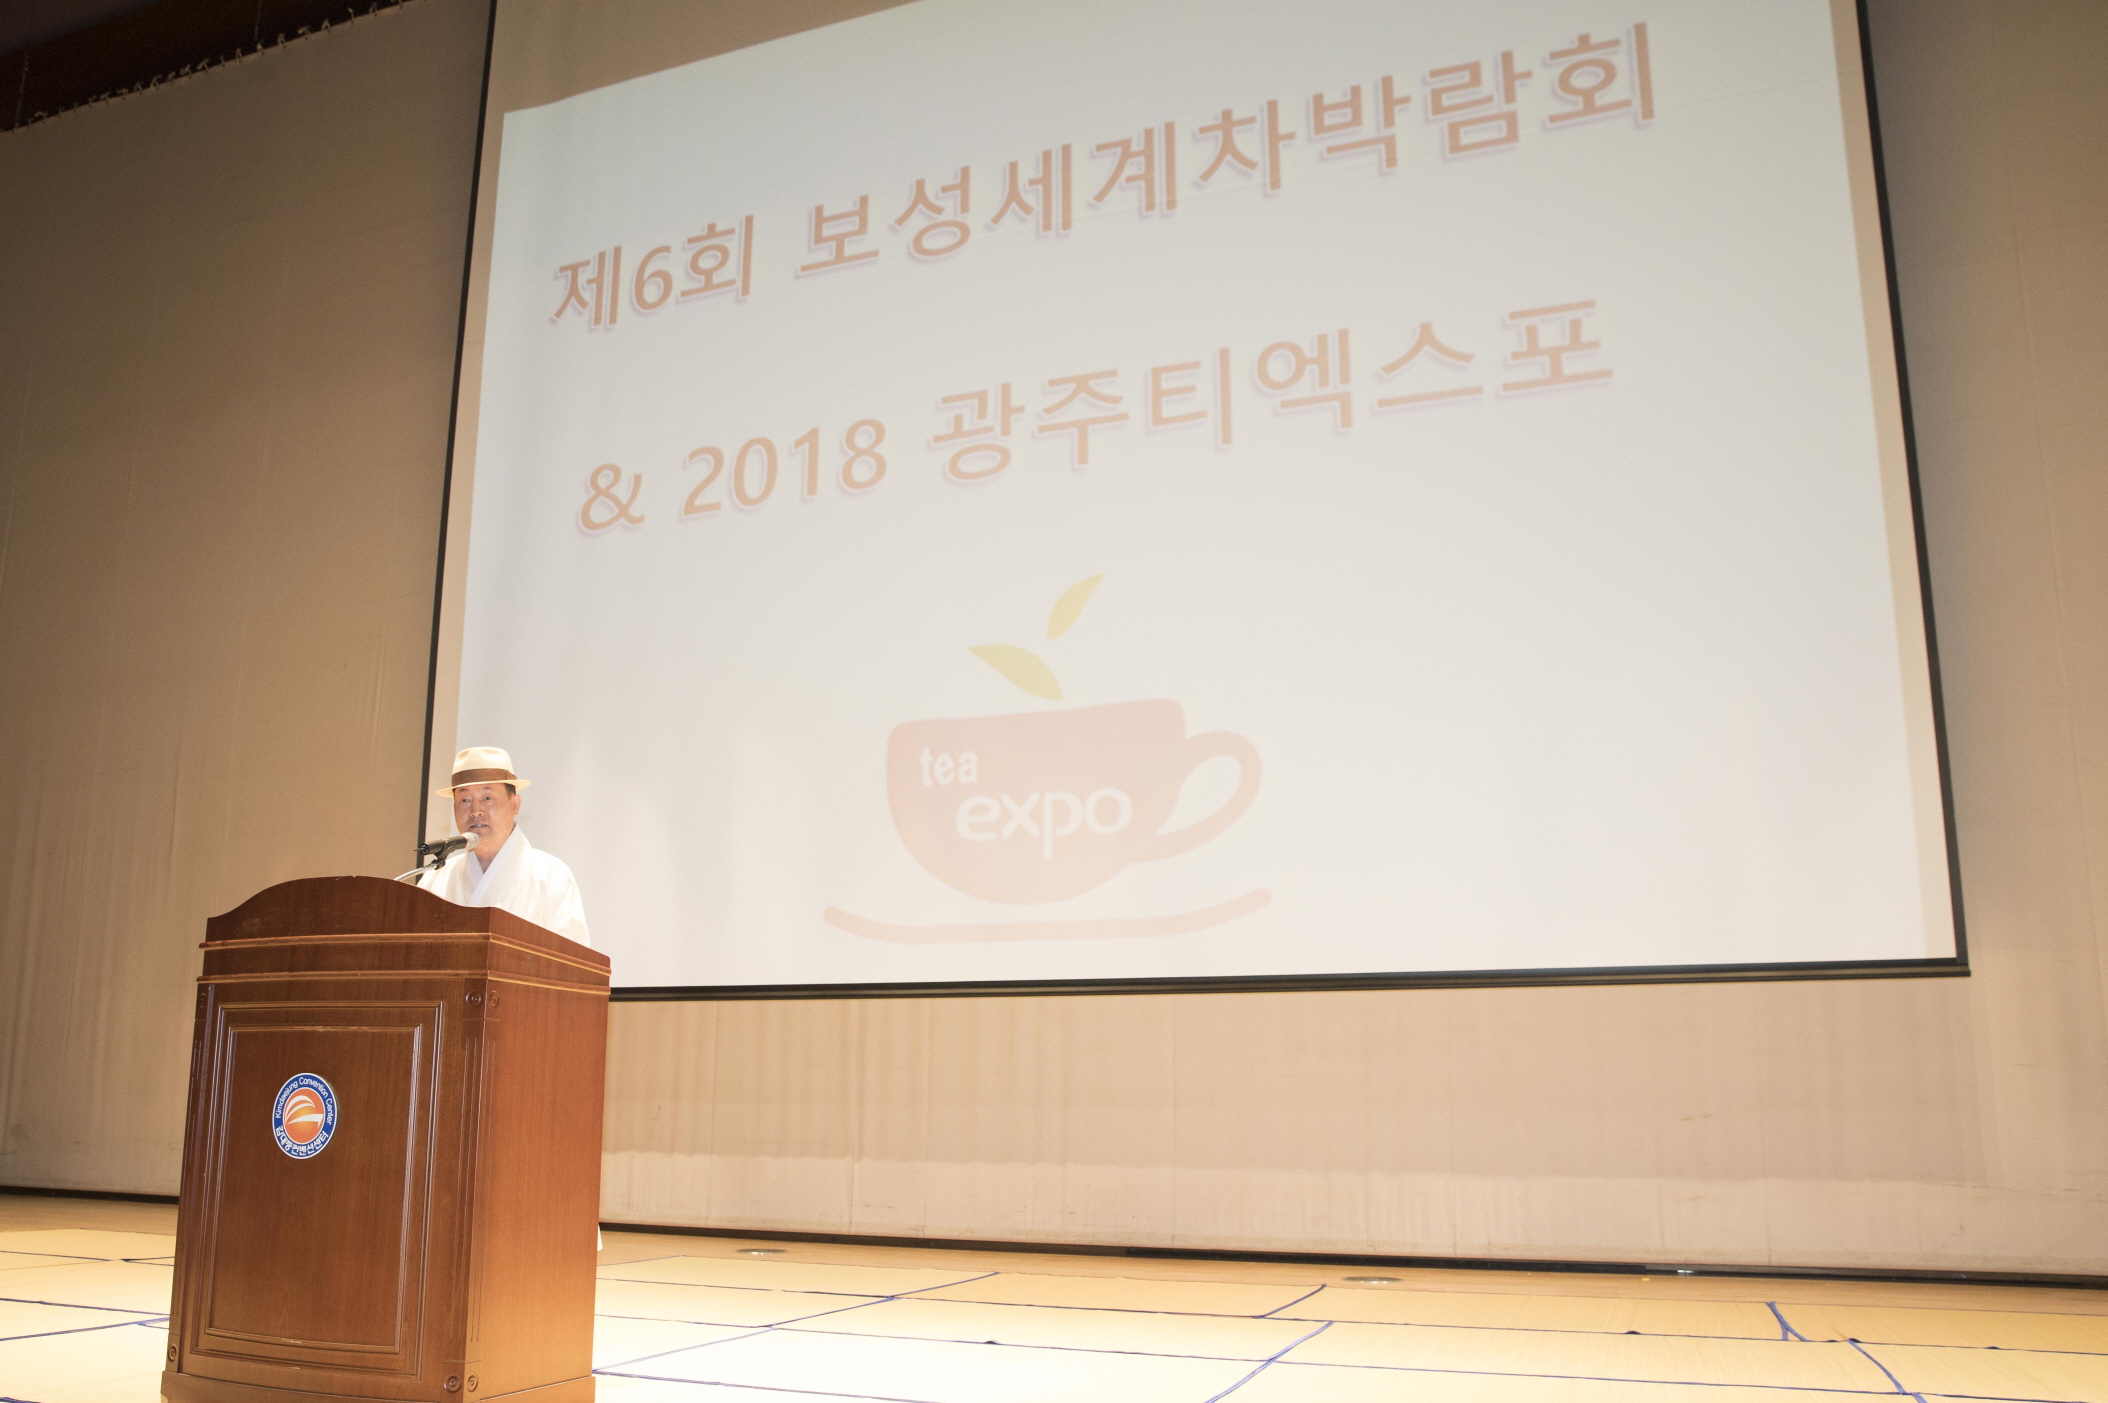 제6회 보성세계차박람회&2018 광주티엑스포 참여(2)